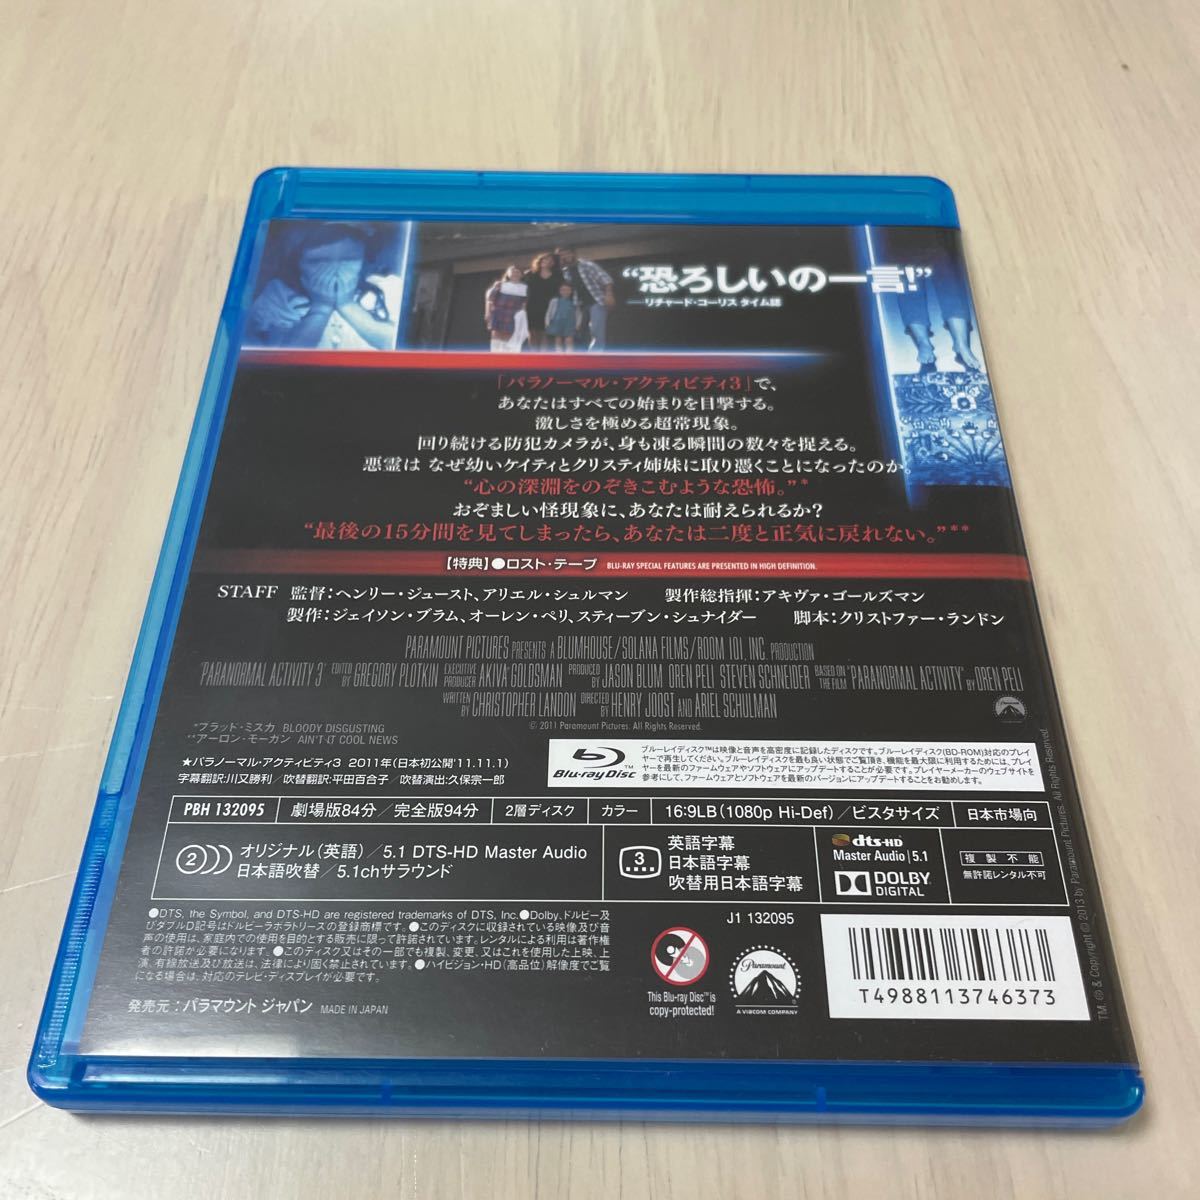 パラノーマルアクティビティ3 国内版Blu-ray Disc